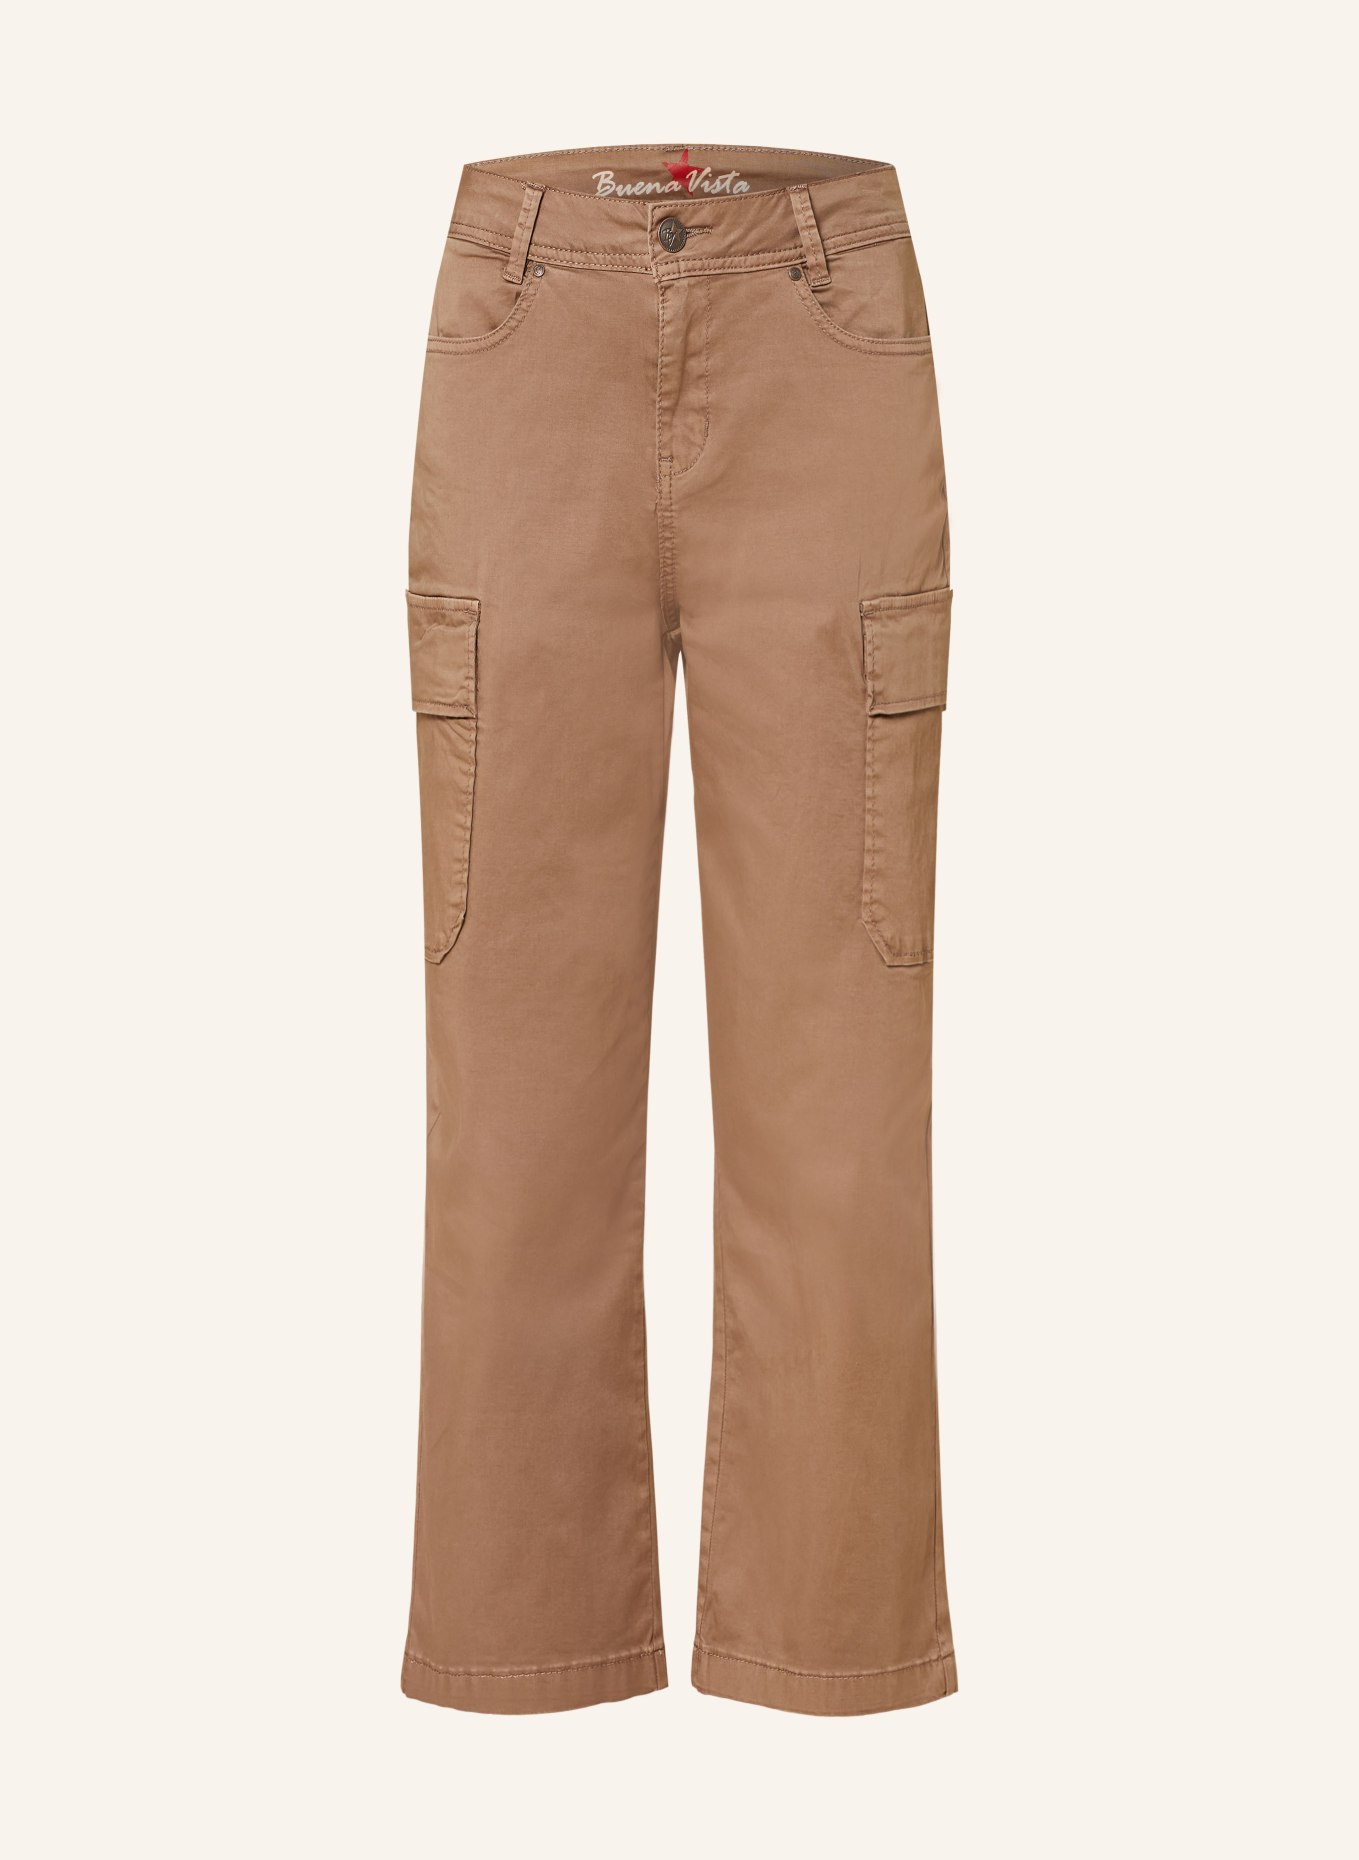 Buena Vista Cargo pants, Color: BROWN (Image 1)